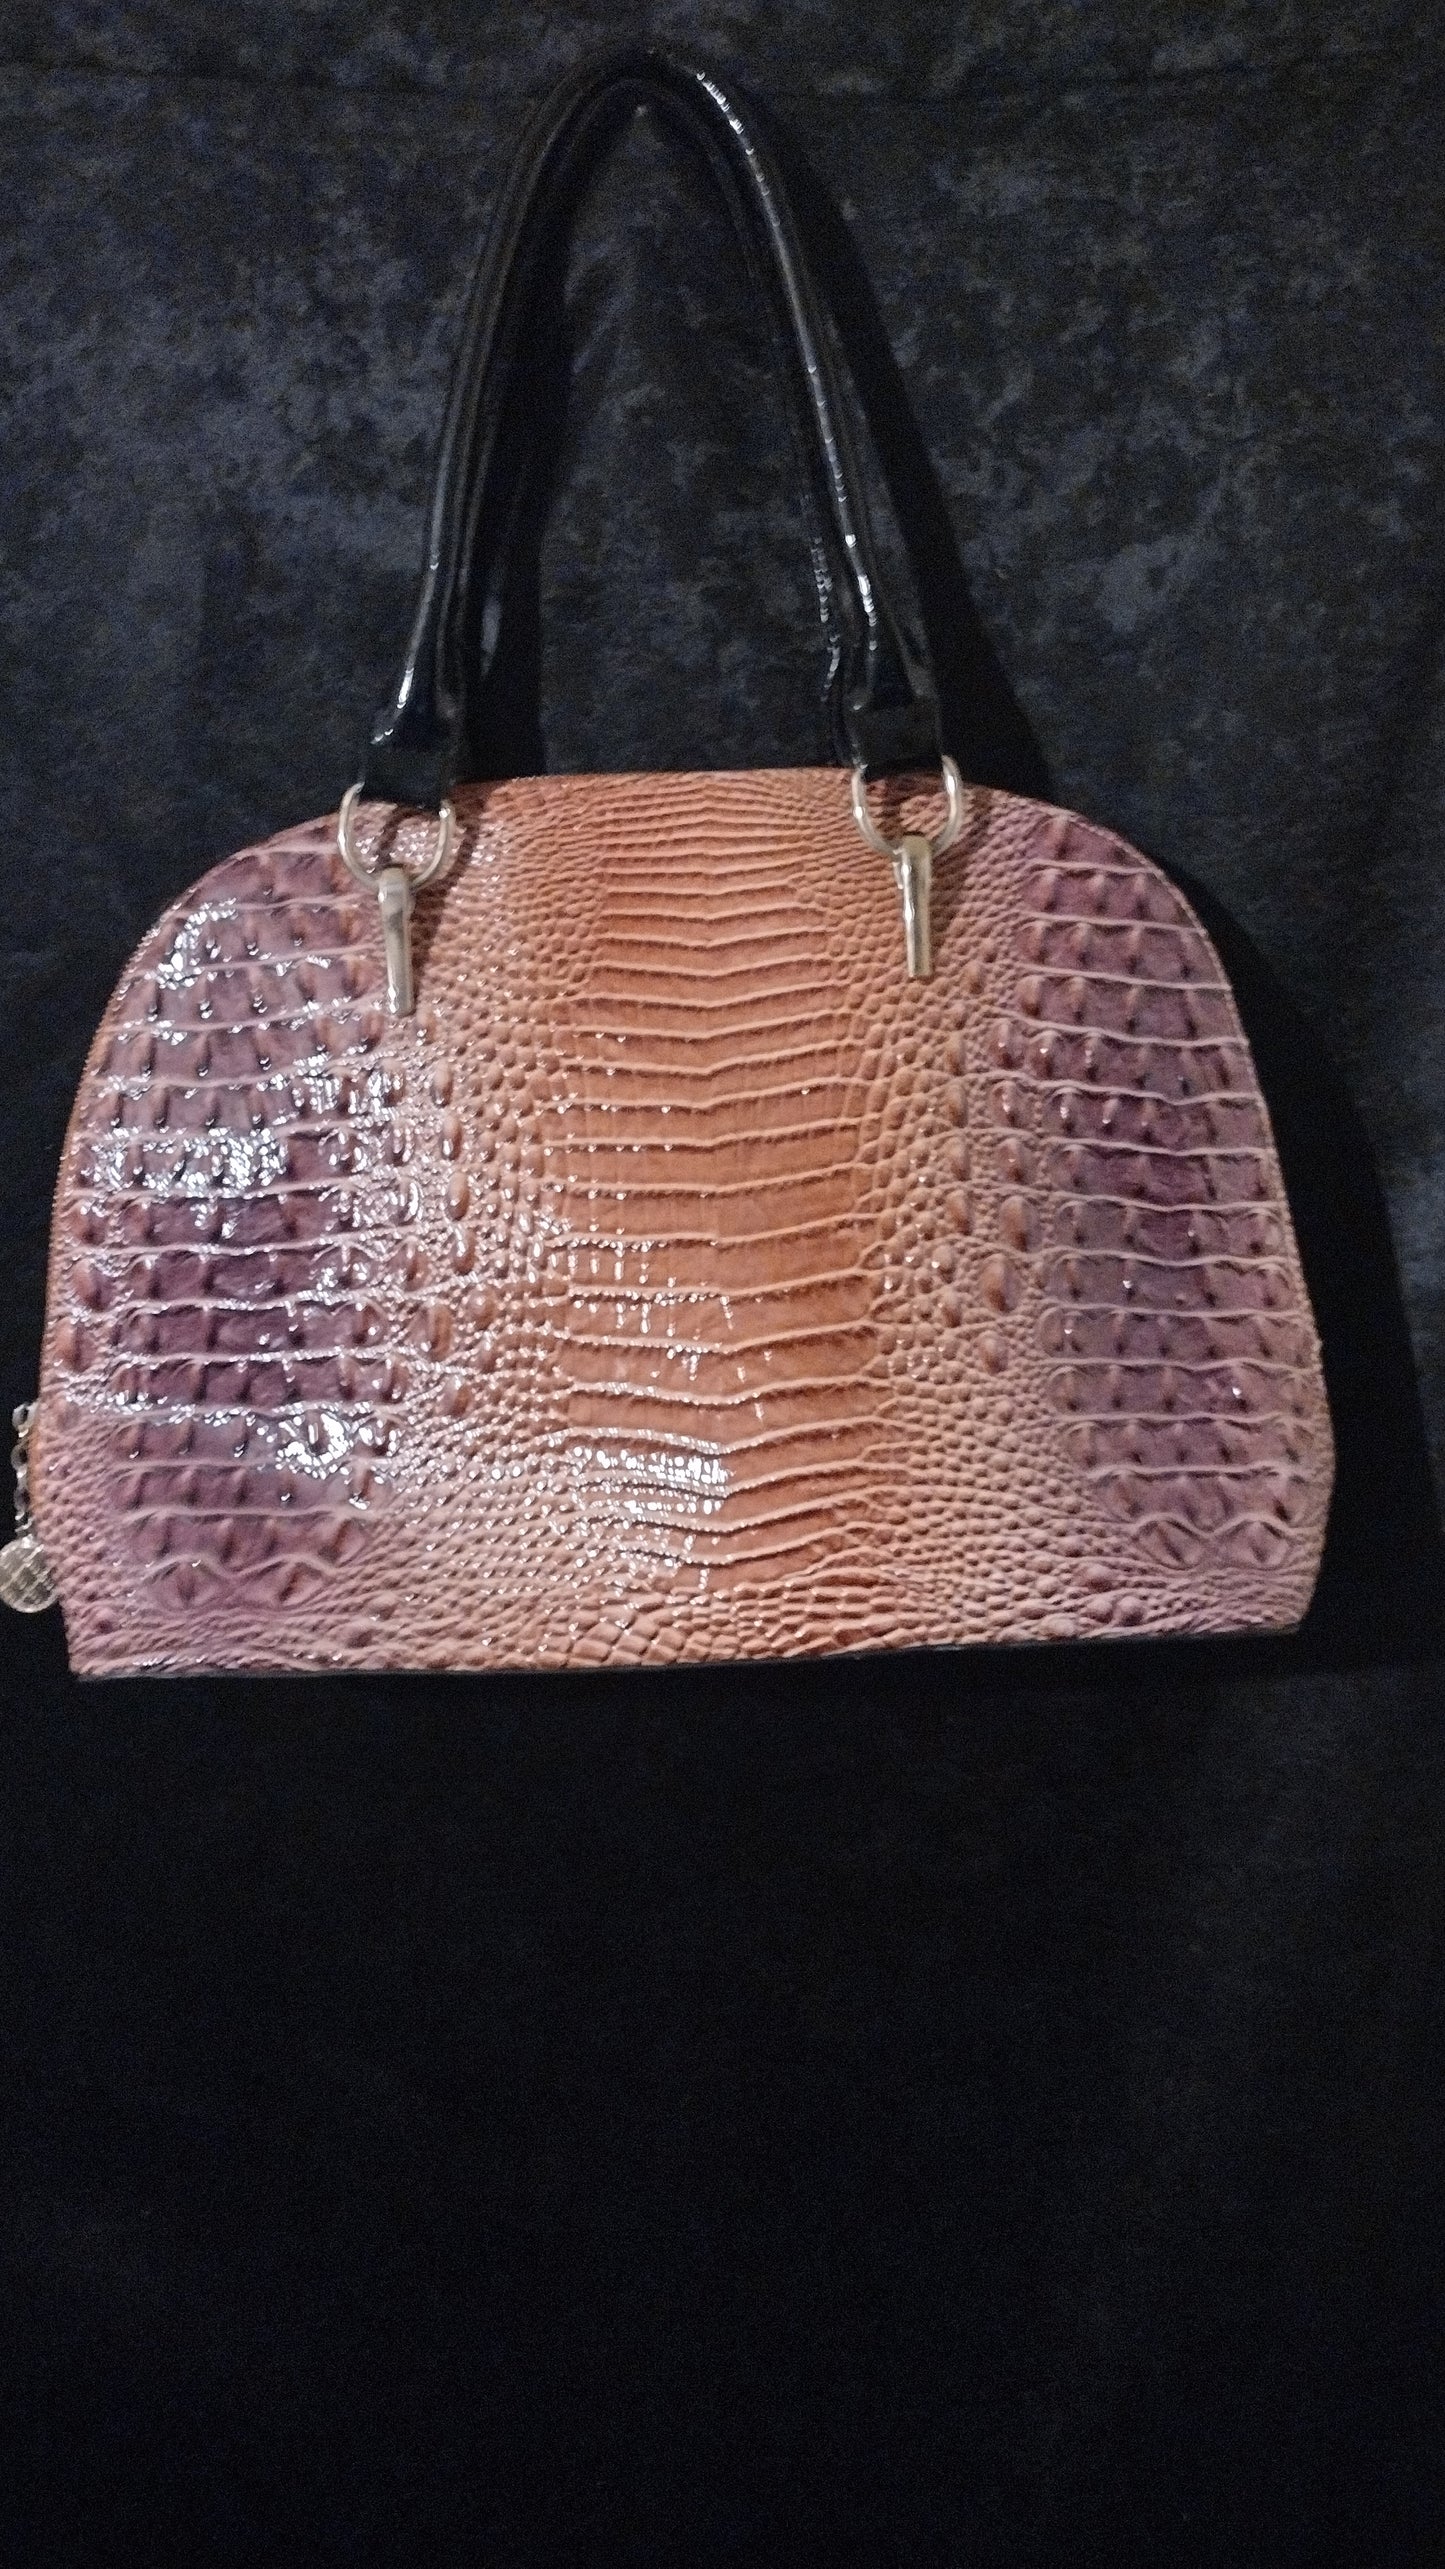 Top handle Satchel handbag